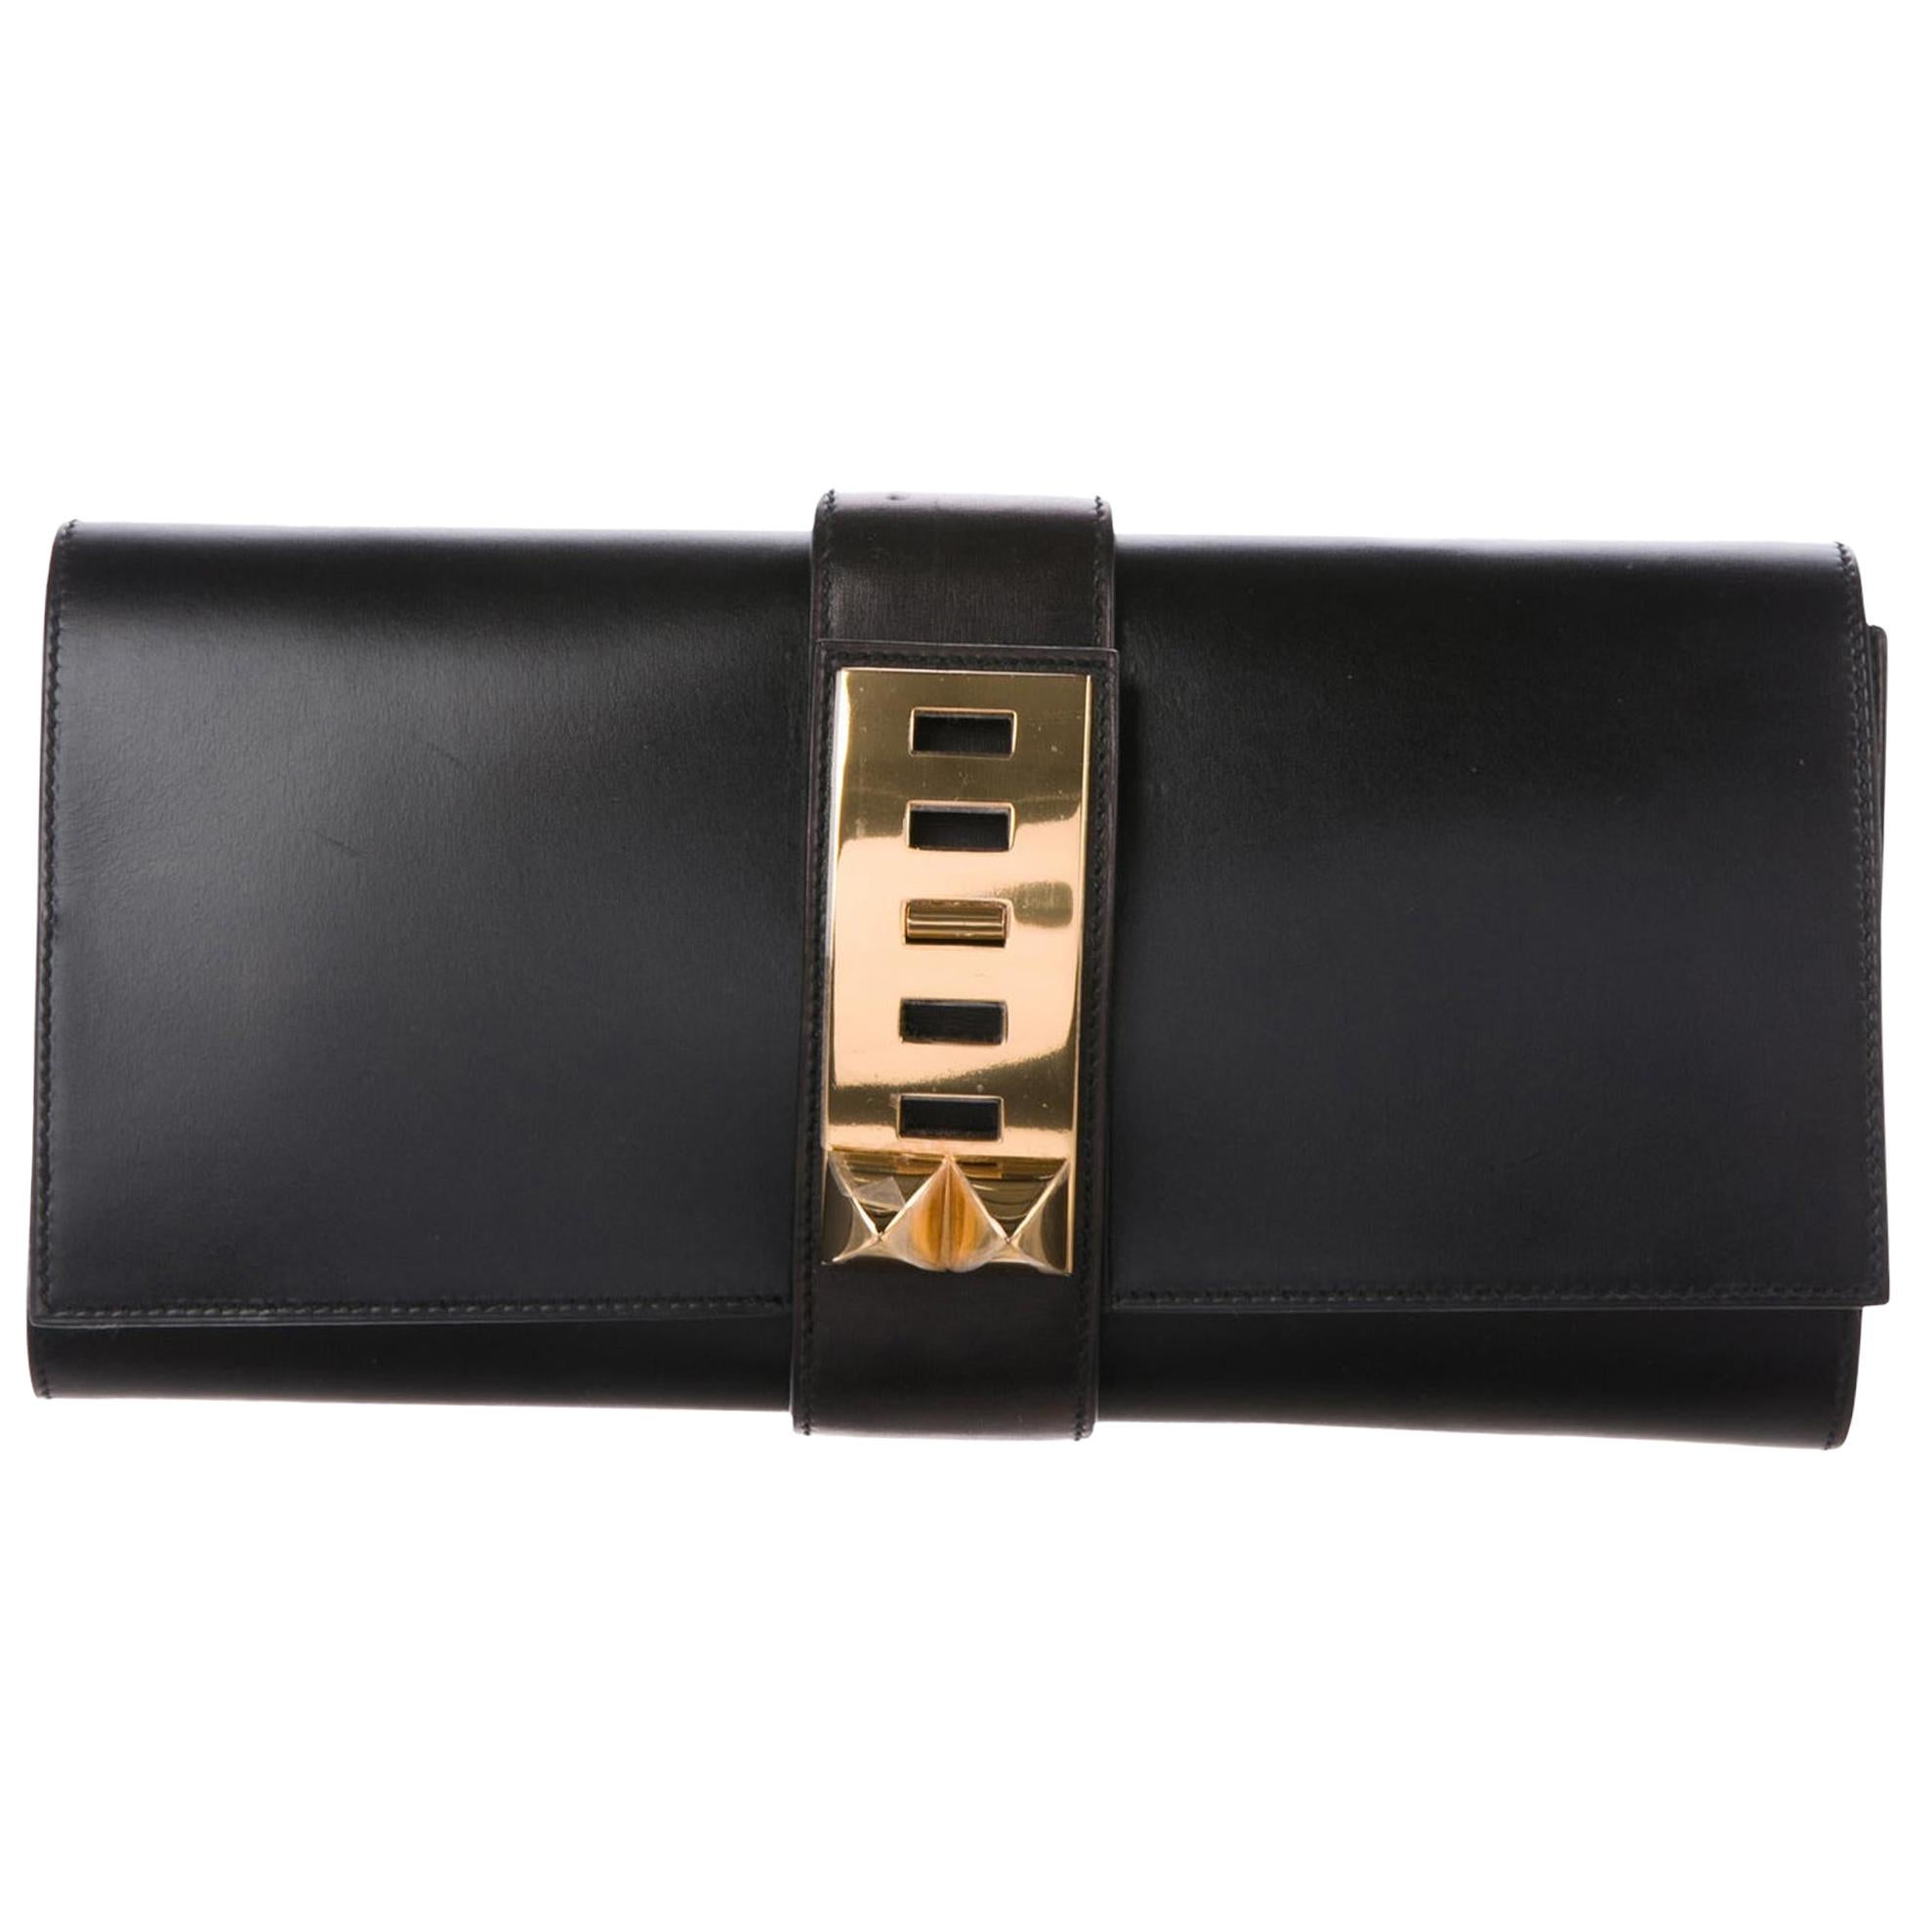 Hermes Black Leather Gold Collier Evening Envelope Clutch Flap Bag 